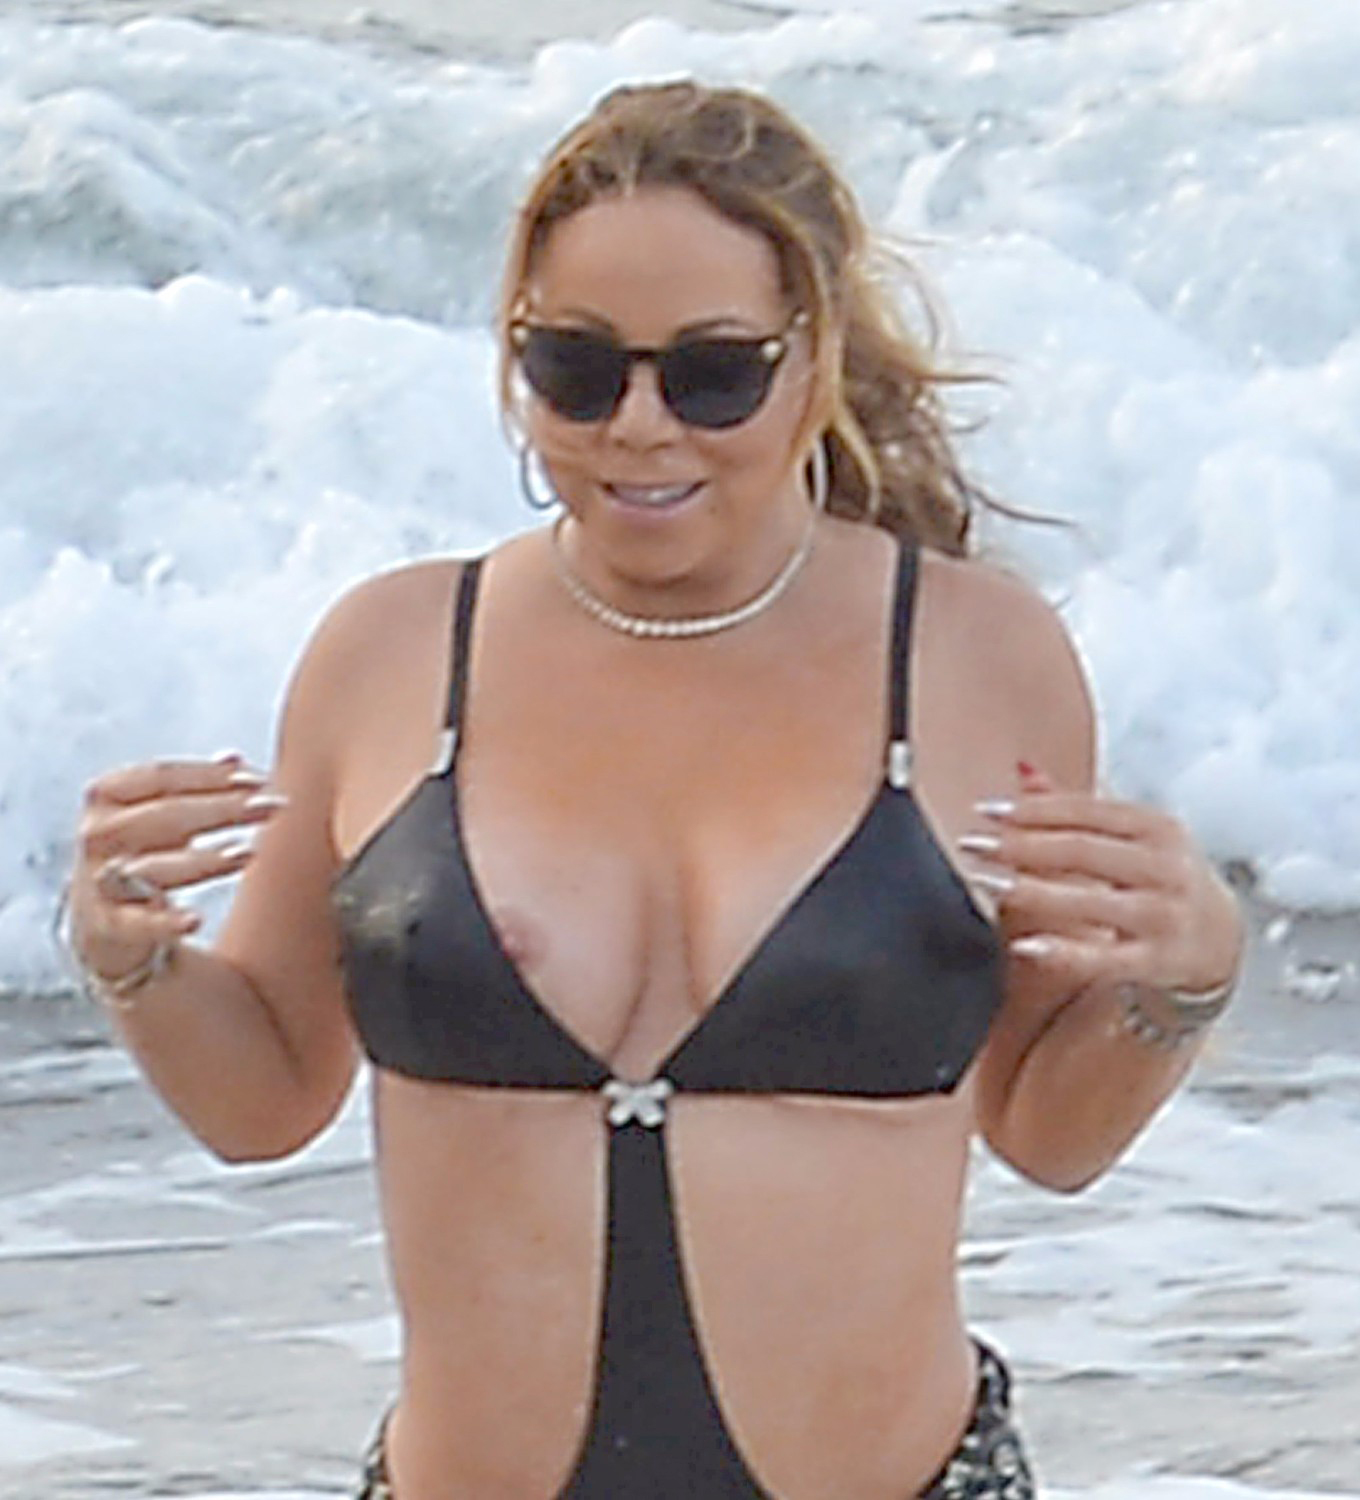 Mariah Carey Tits - Nipple Slip at The Beach.